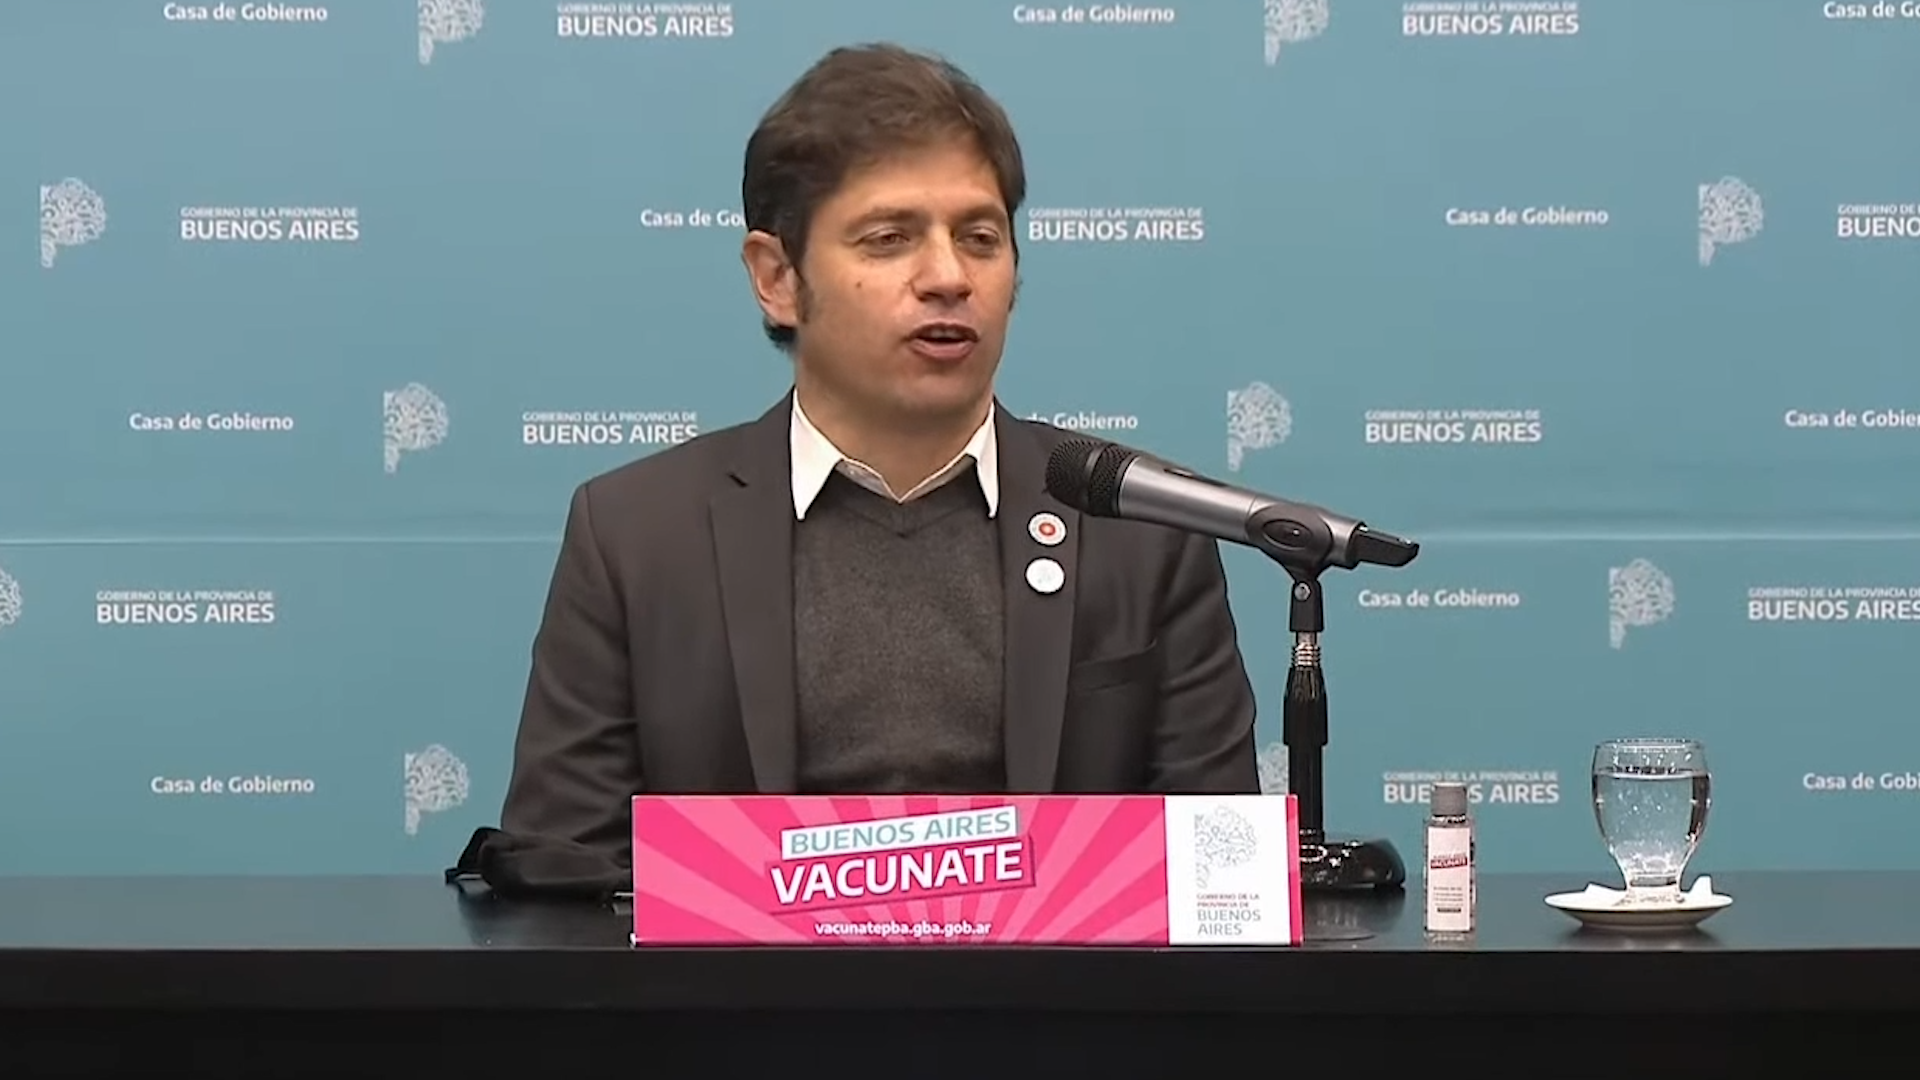 El gobernador Axel Kicillof también anunció la extención del programa de vacuna libre para todos los grupos priorizados